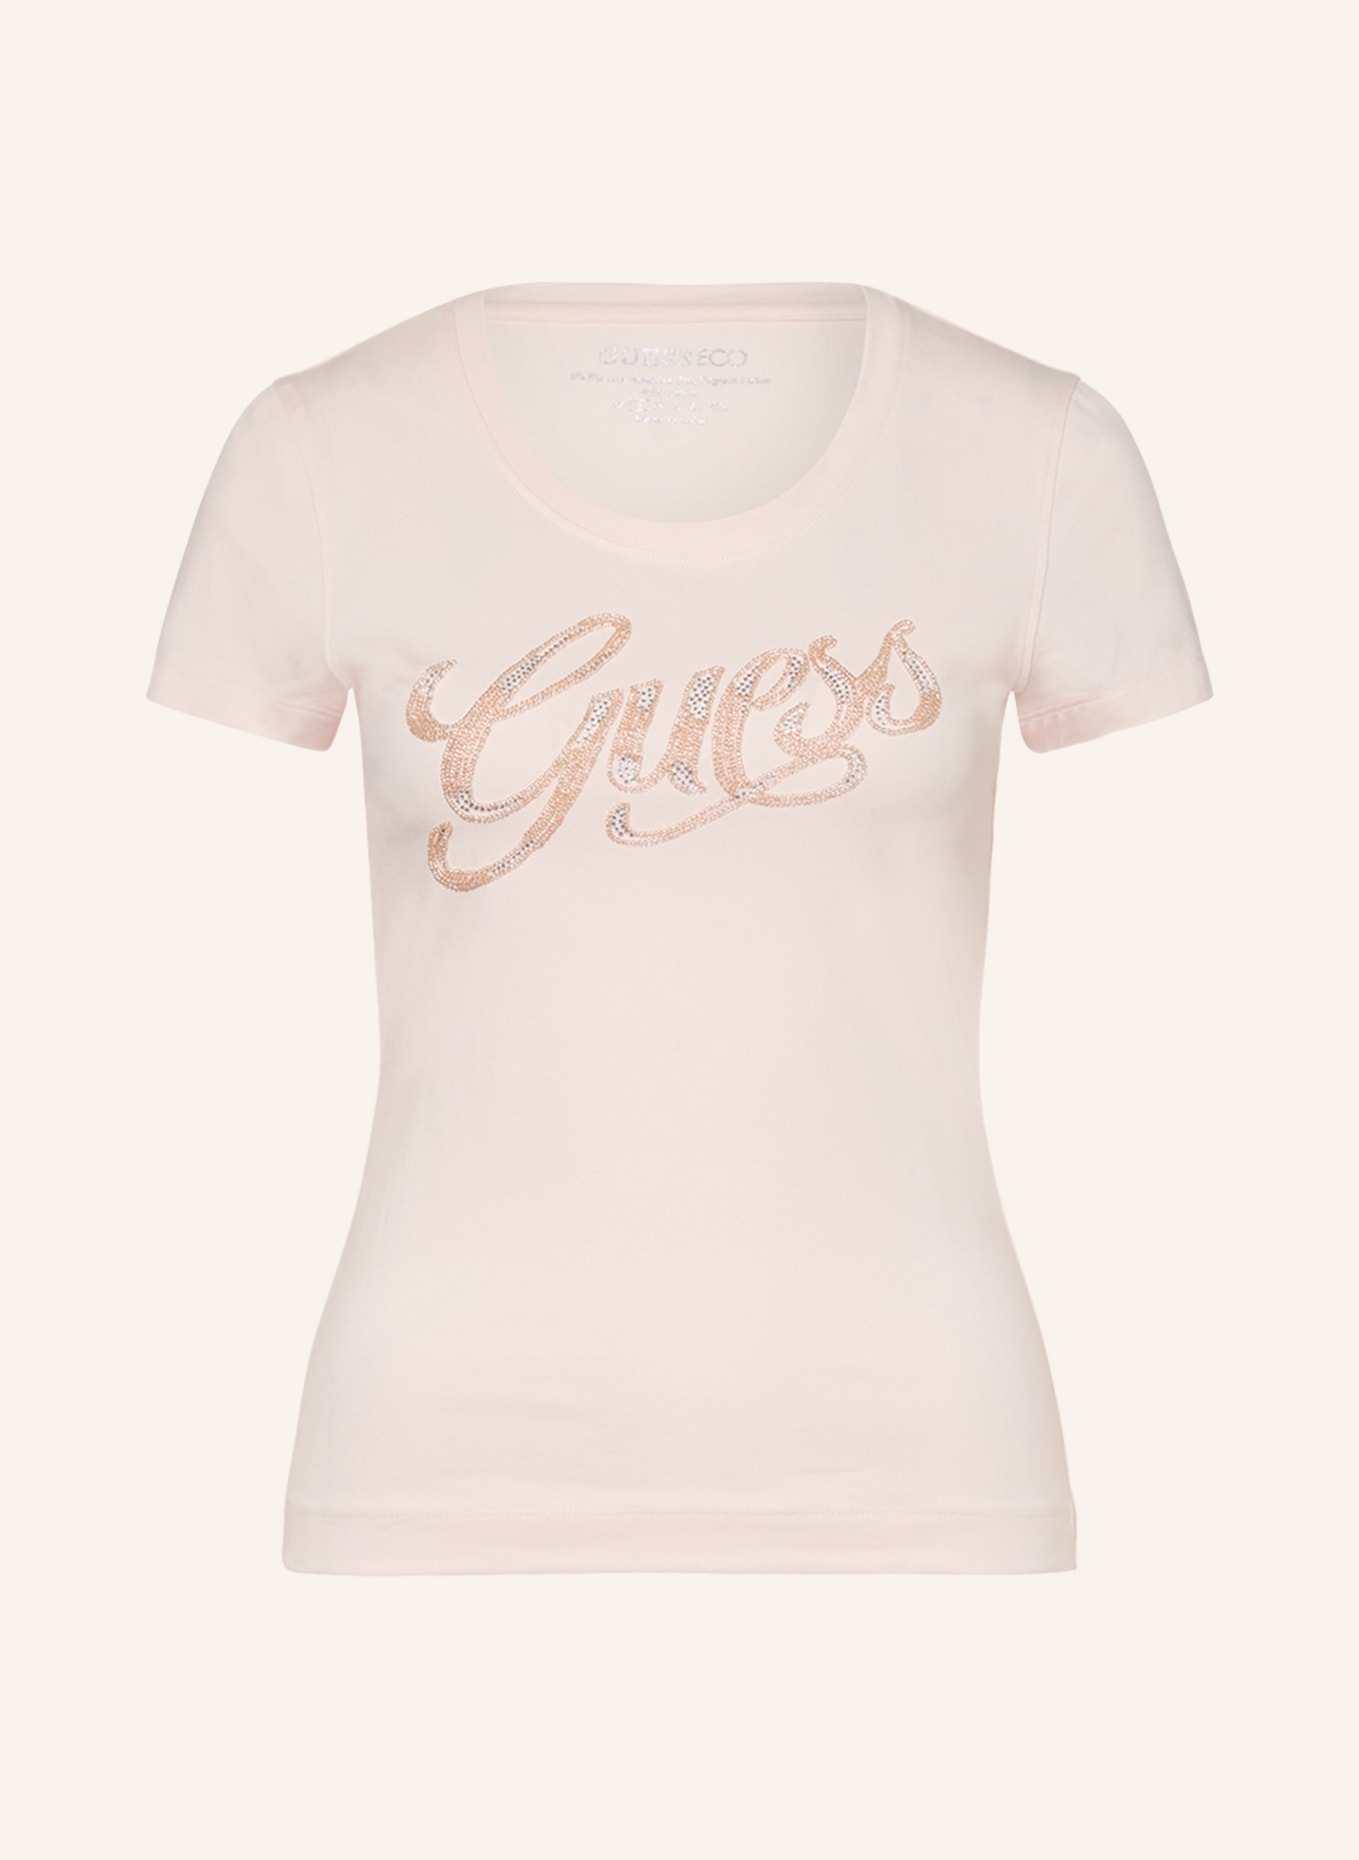 GUESS T-Shirt SCRIPT mit Schmuckperlen, Farbe: ROSA (Bild 1)